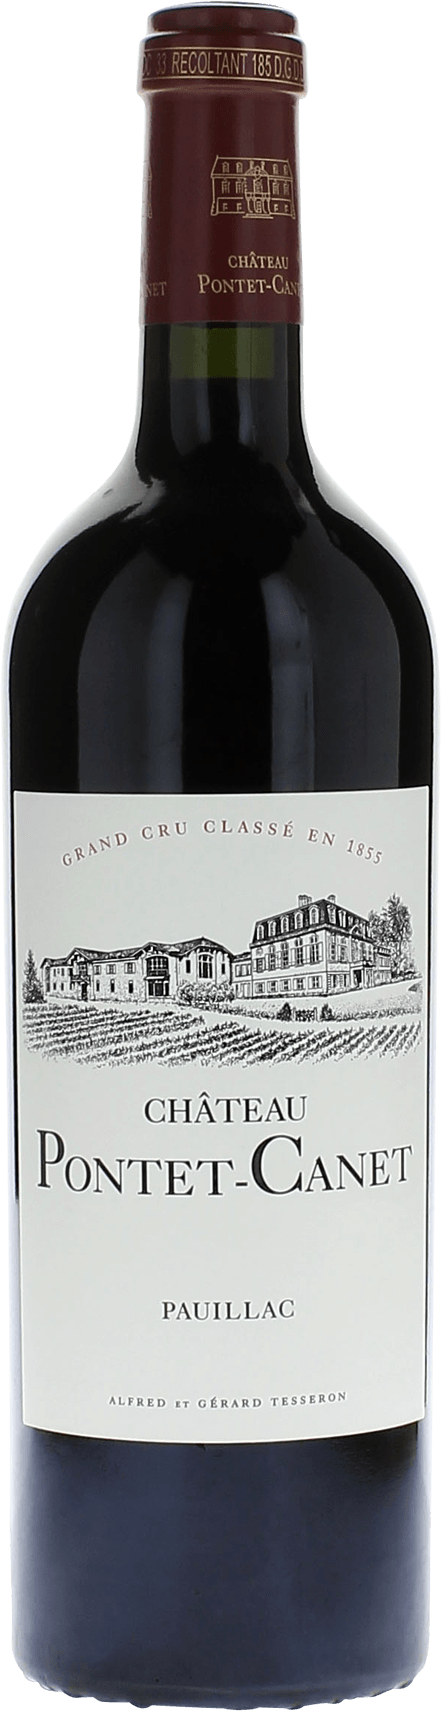 Pontet canet 2015 5me Grand cru class Pauillac, Bordeaux rouge